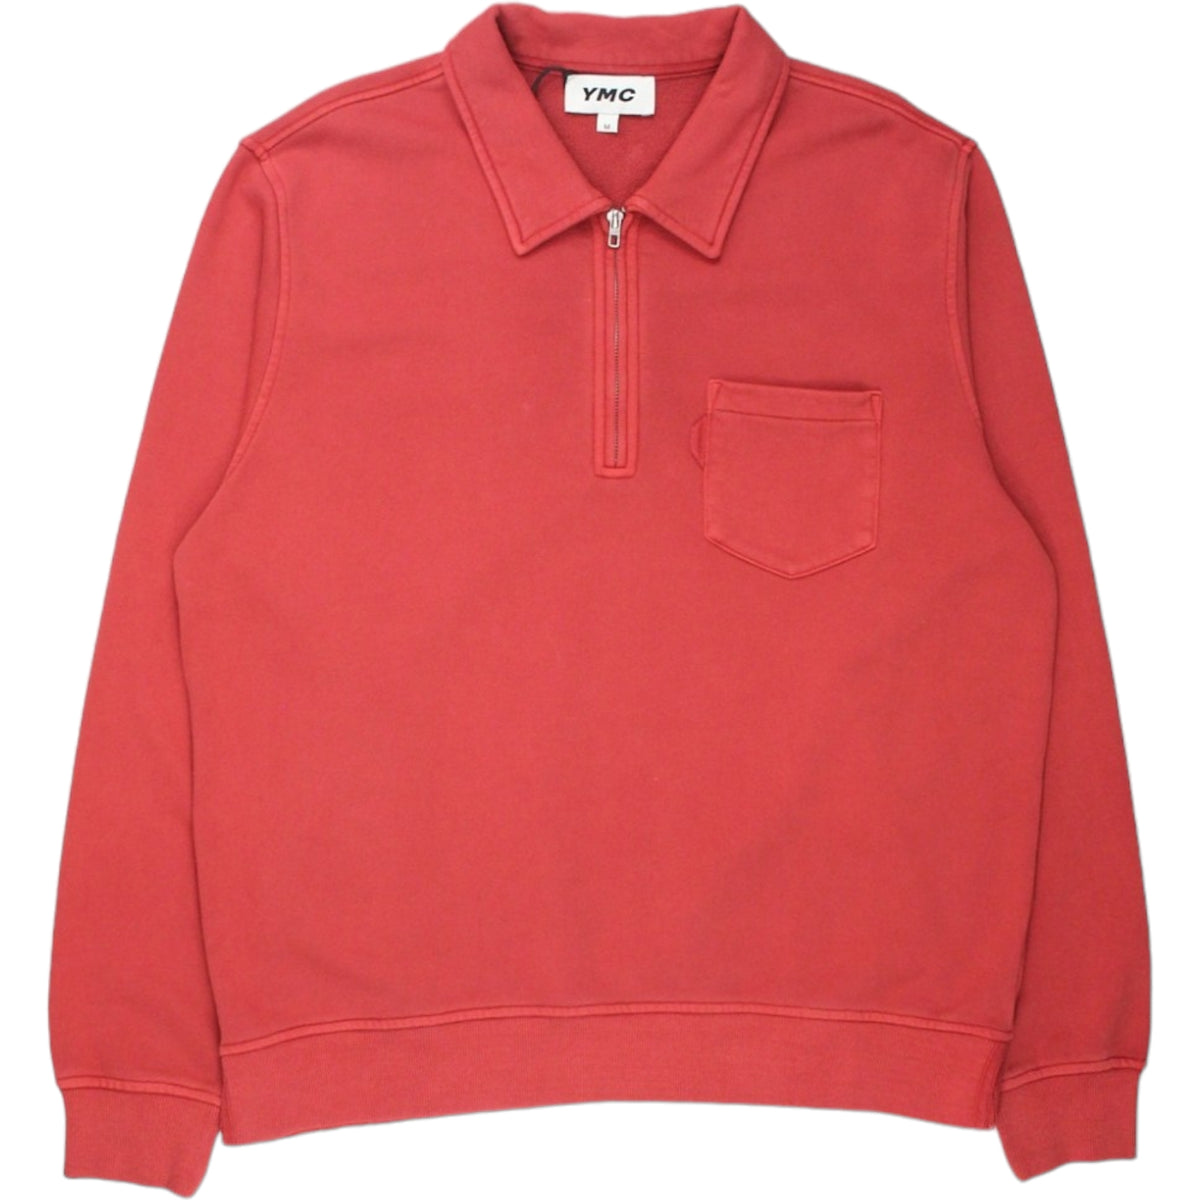 YMC Red 1/4 Zip Sugden Sweatshirt